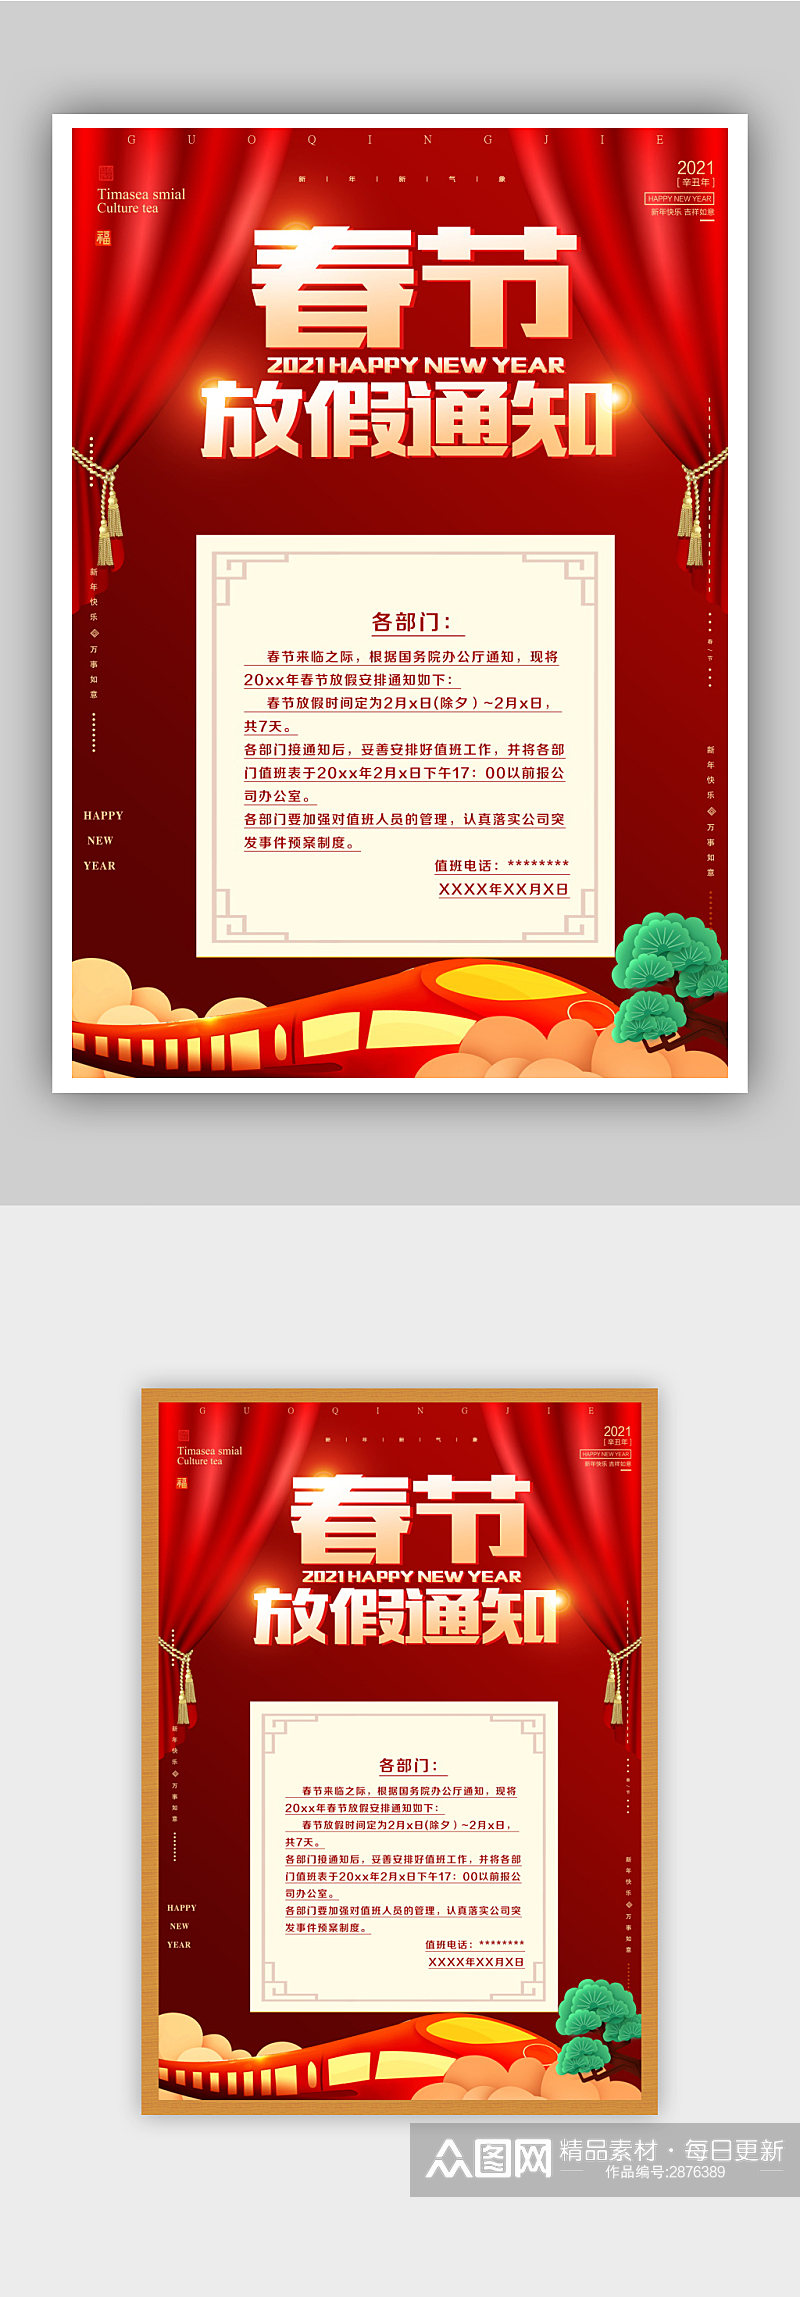 红色中国风春节过年放假公告11素材